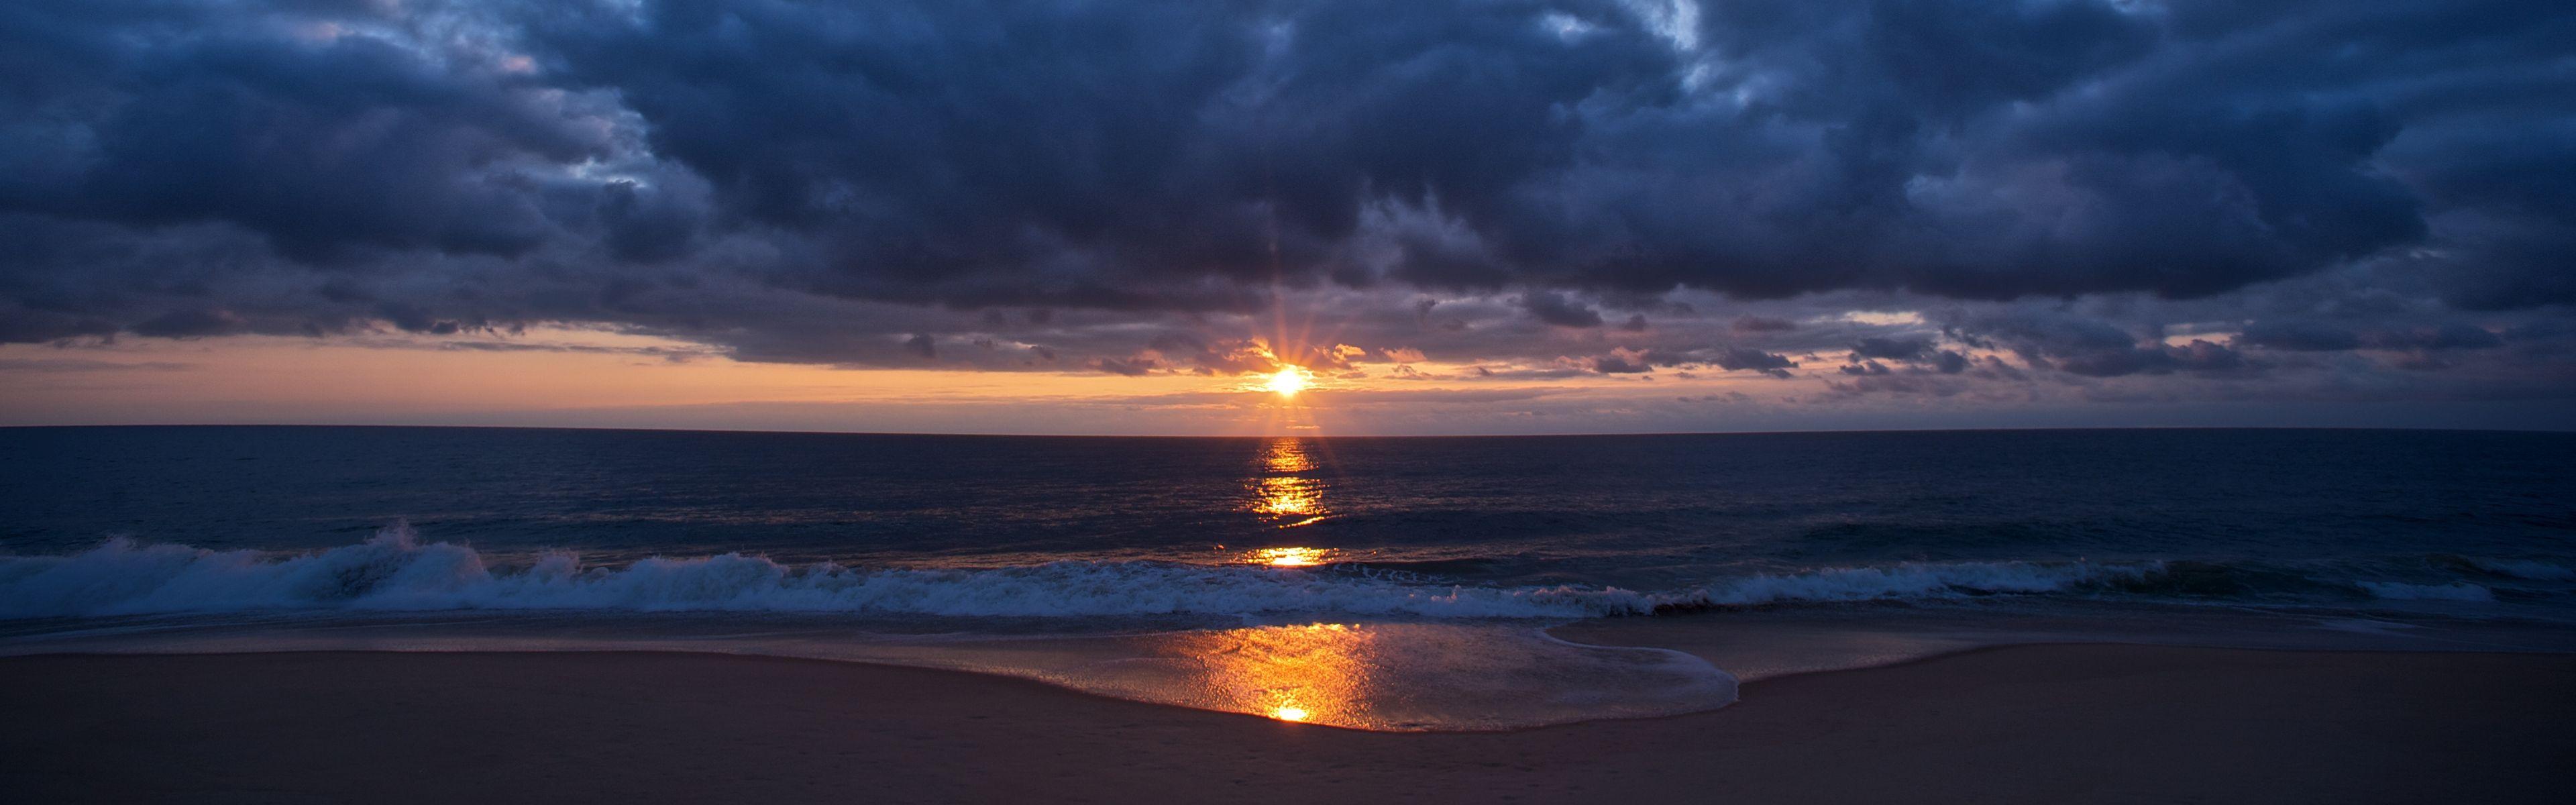 Download Wallpaper beach sunset ocean usa dawn sunrise clouds